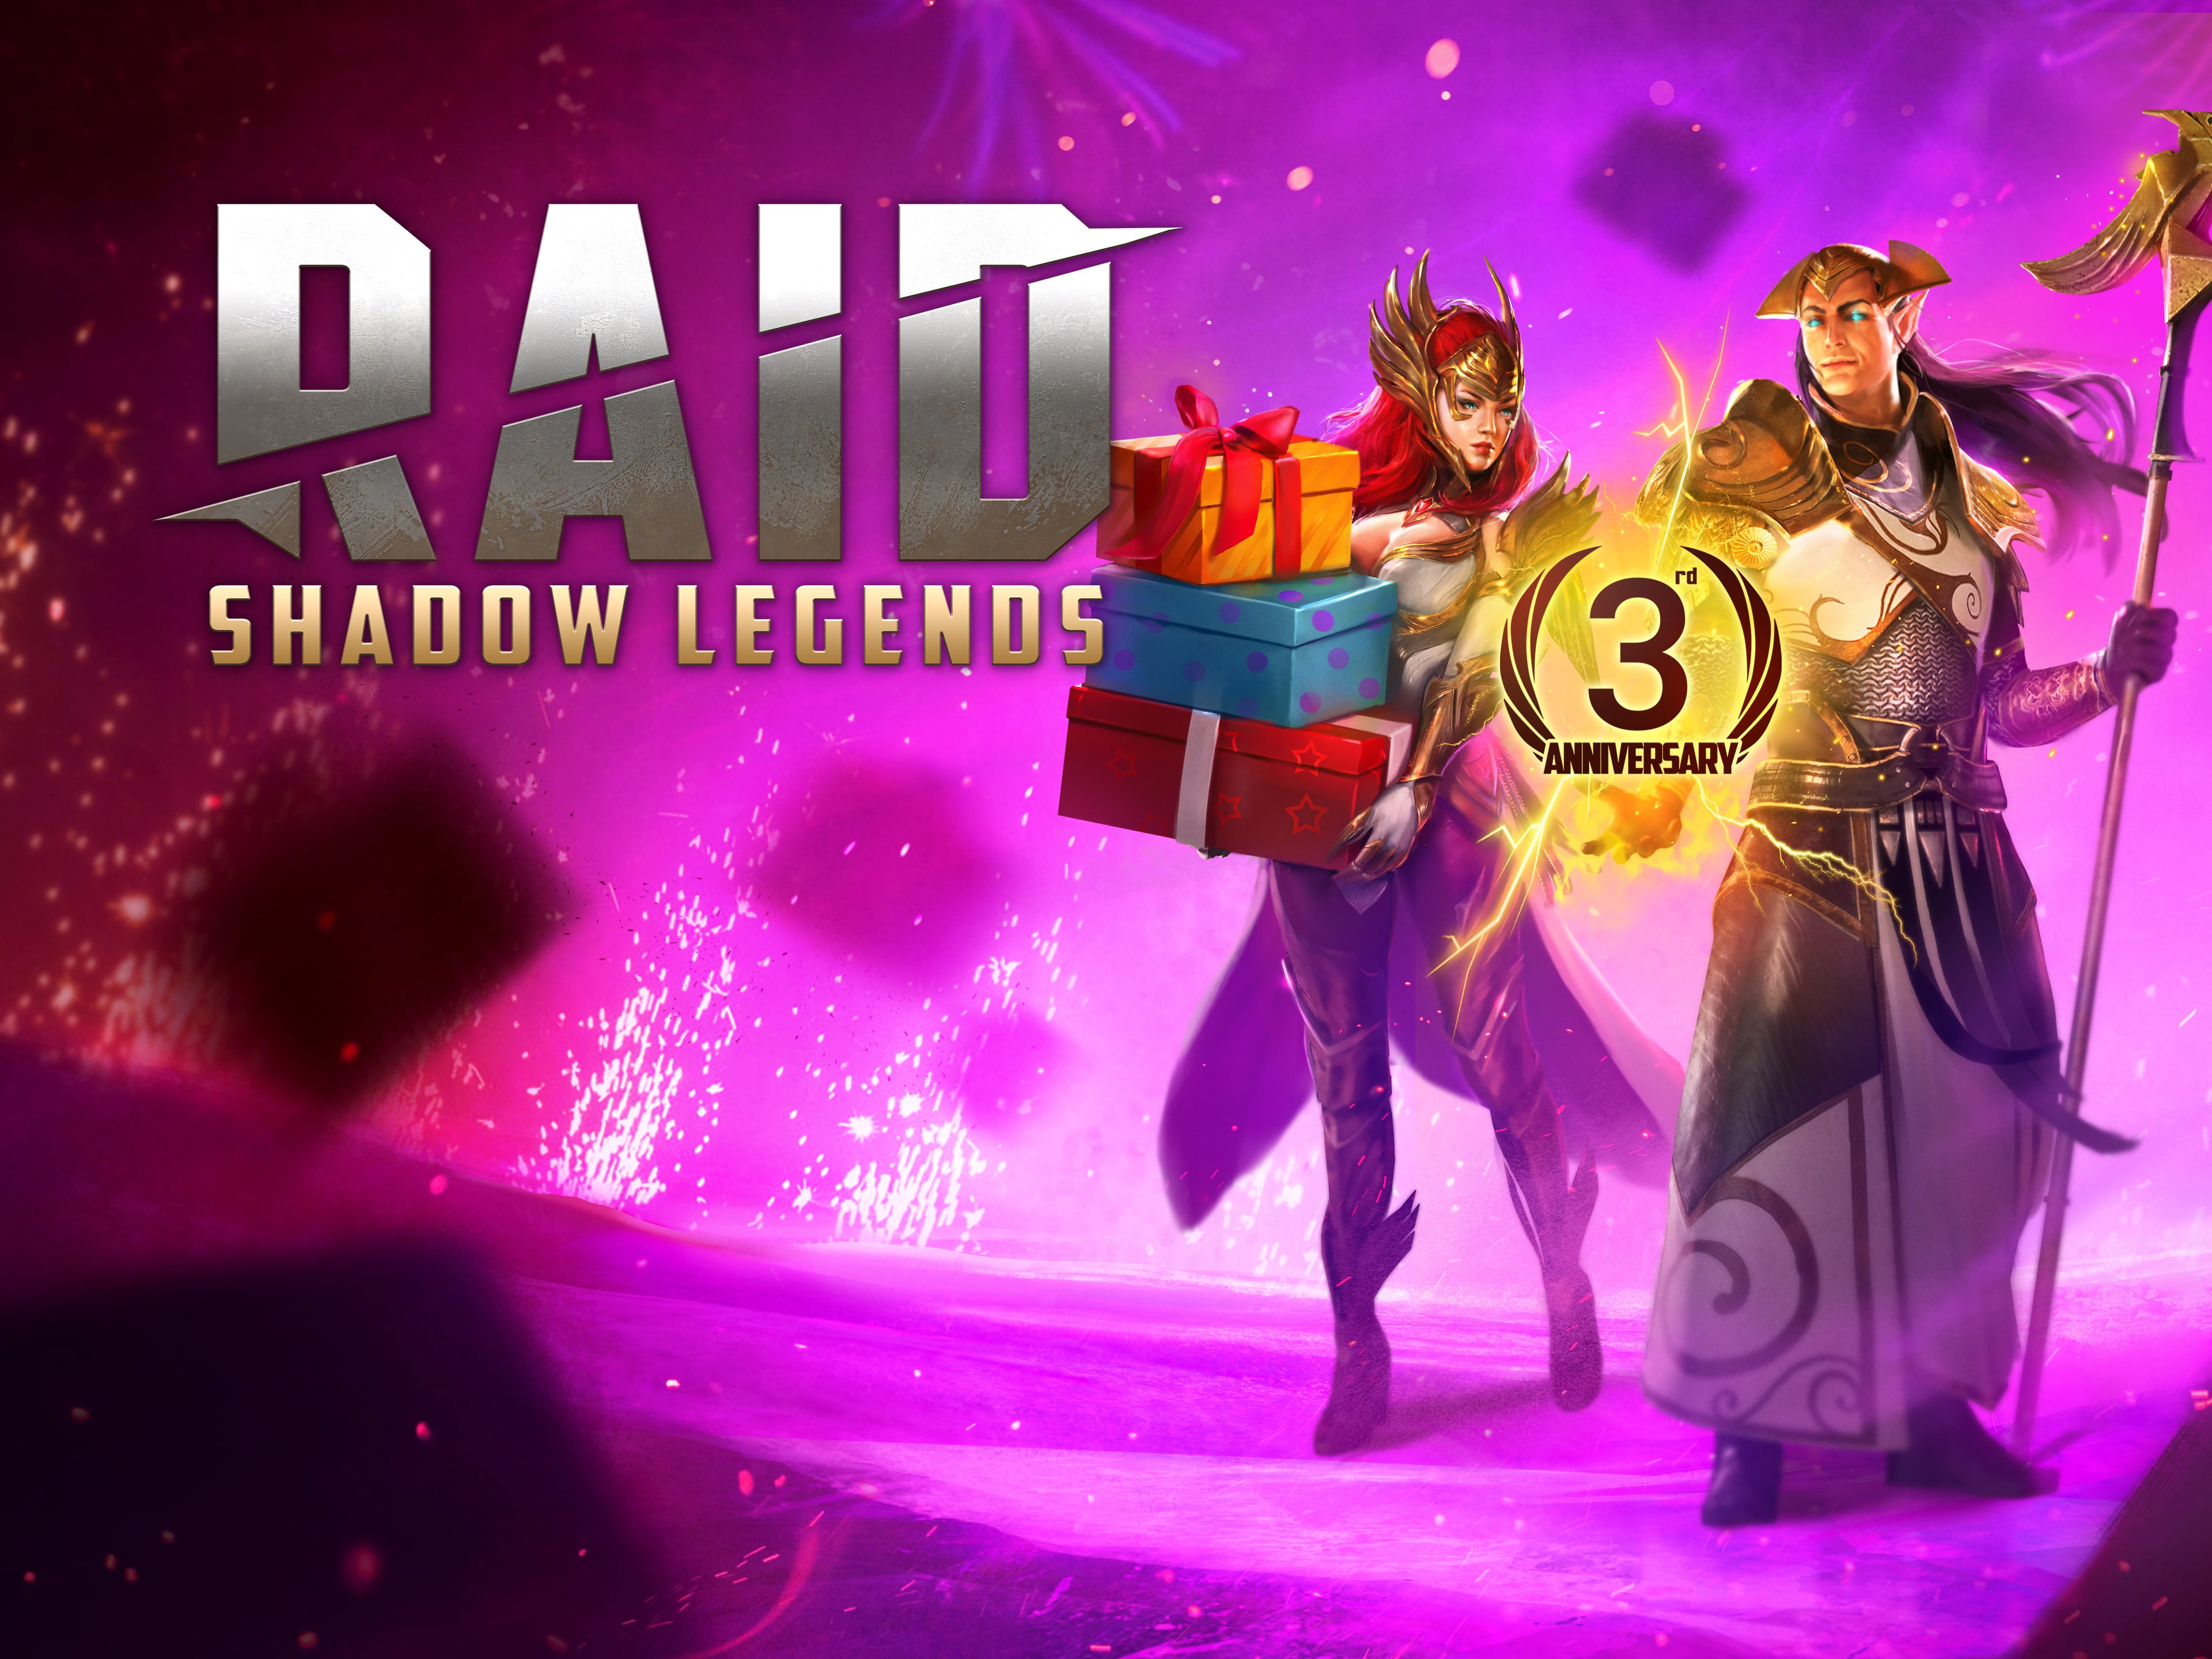 Feier das dritte Jubiläum von Raid:Shadow Legends